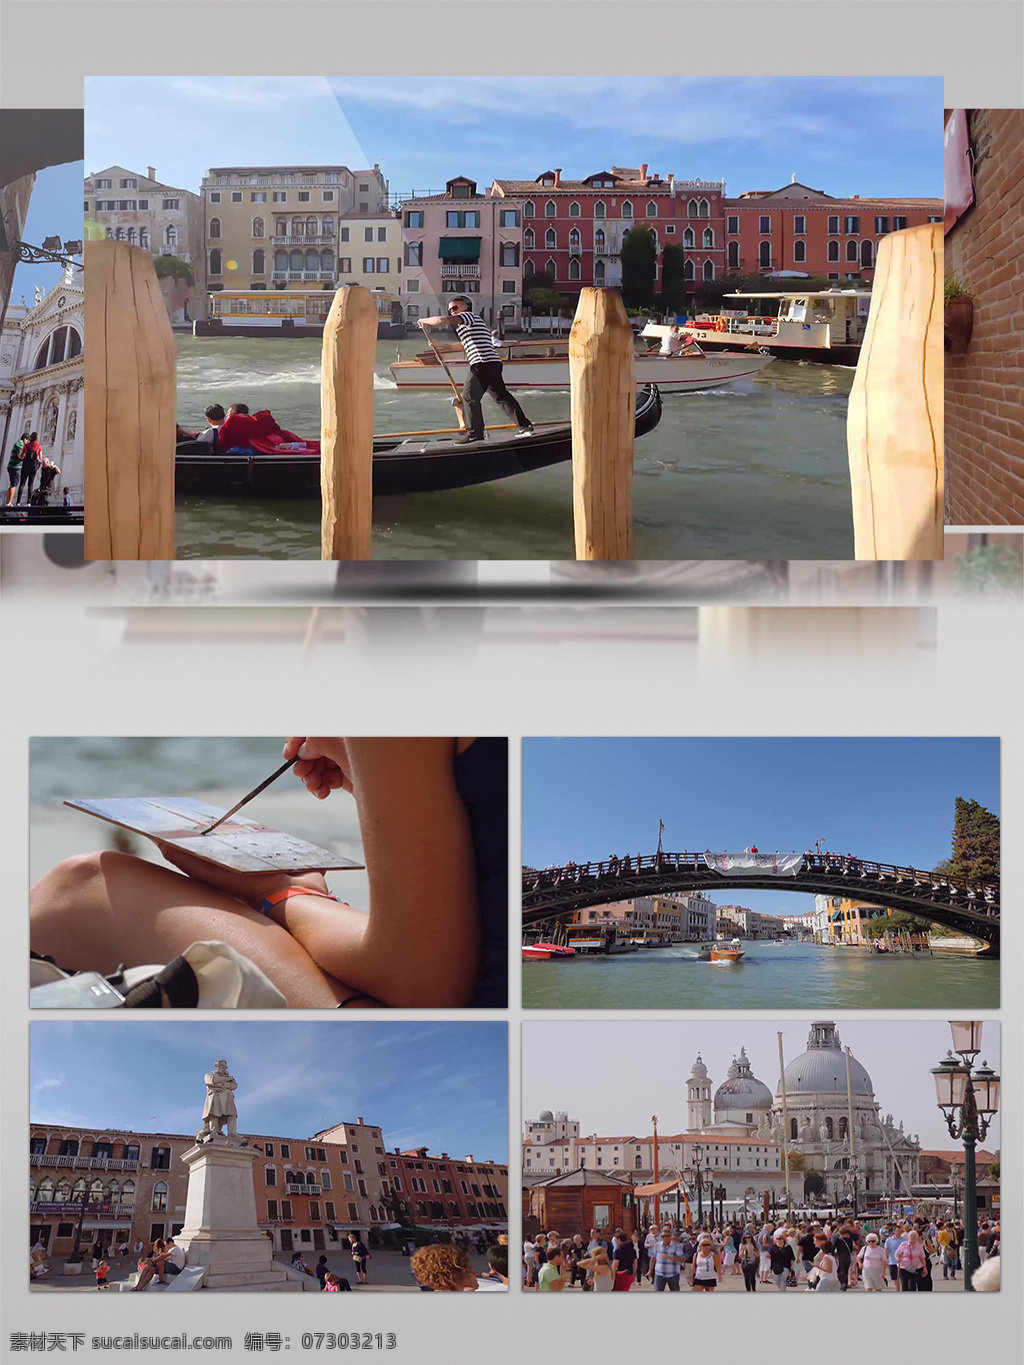 4k 威尼斯 水上 世界 风光 展示 水上世界 唯美 意大利 水上城市 欧洲风光 人文特色 旅游景观 人物生活